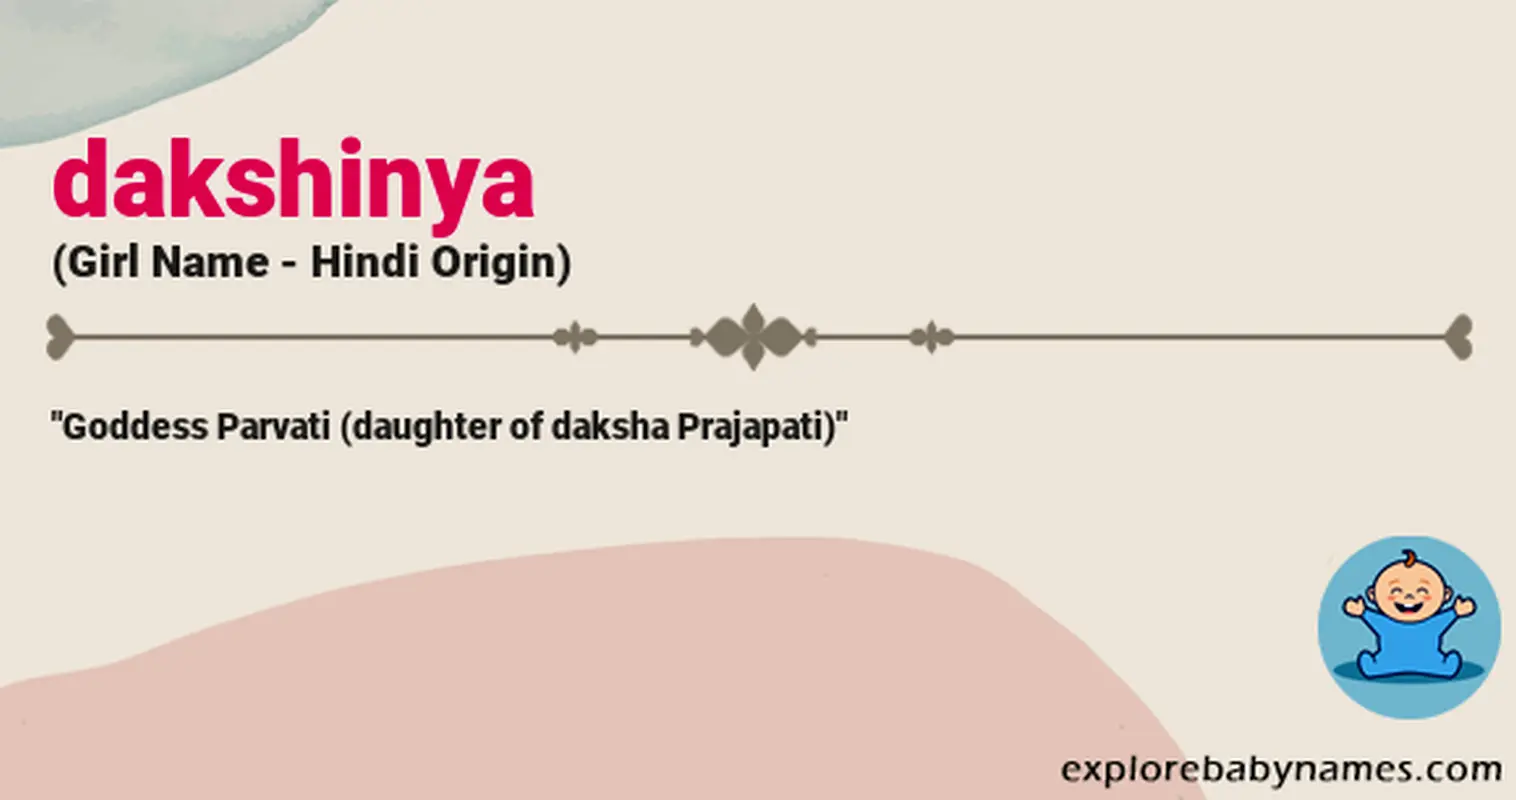 Meaning of Dakshinya